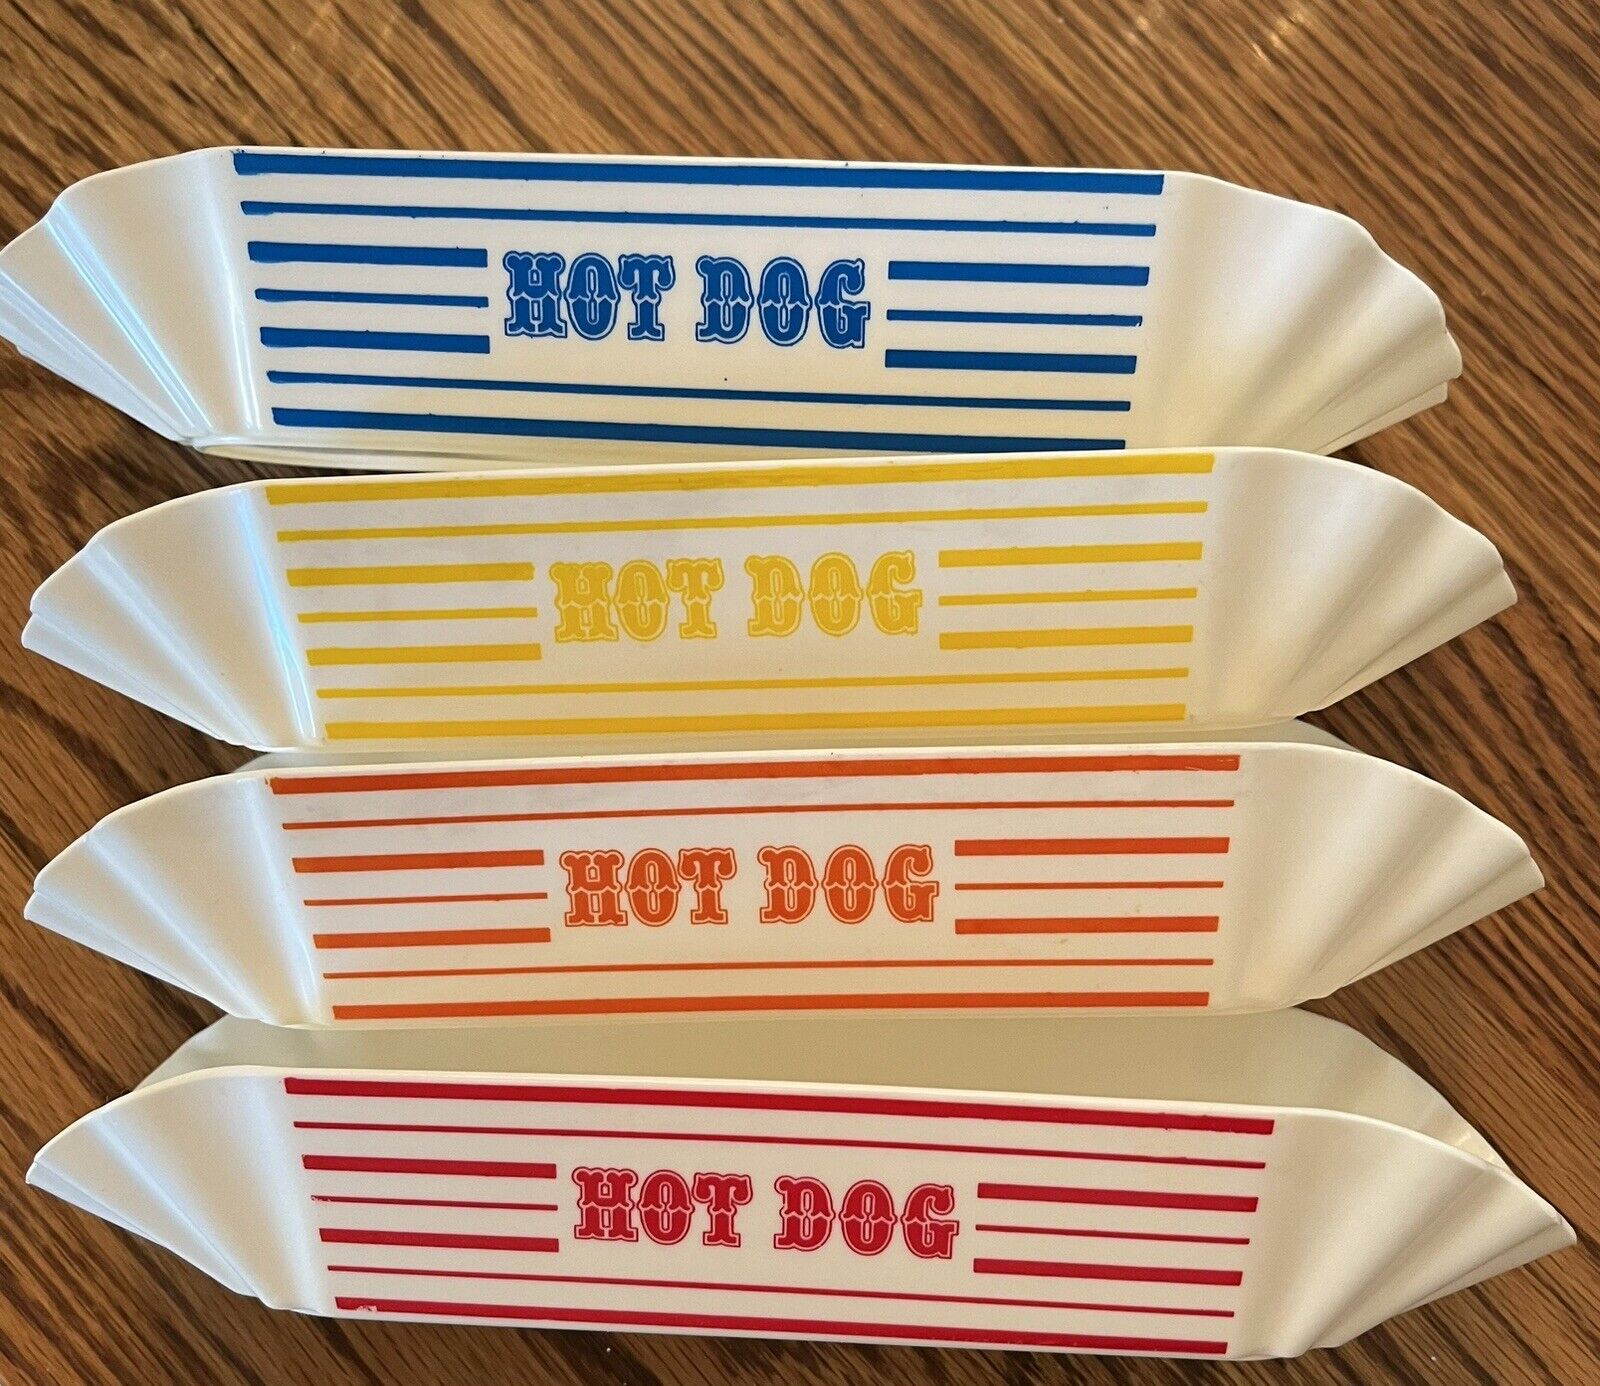 Vintage Plastic Hot Dog Holder - 4 different Striped Colors